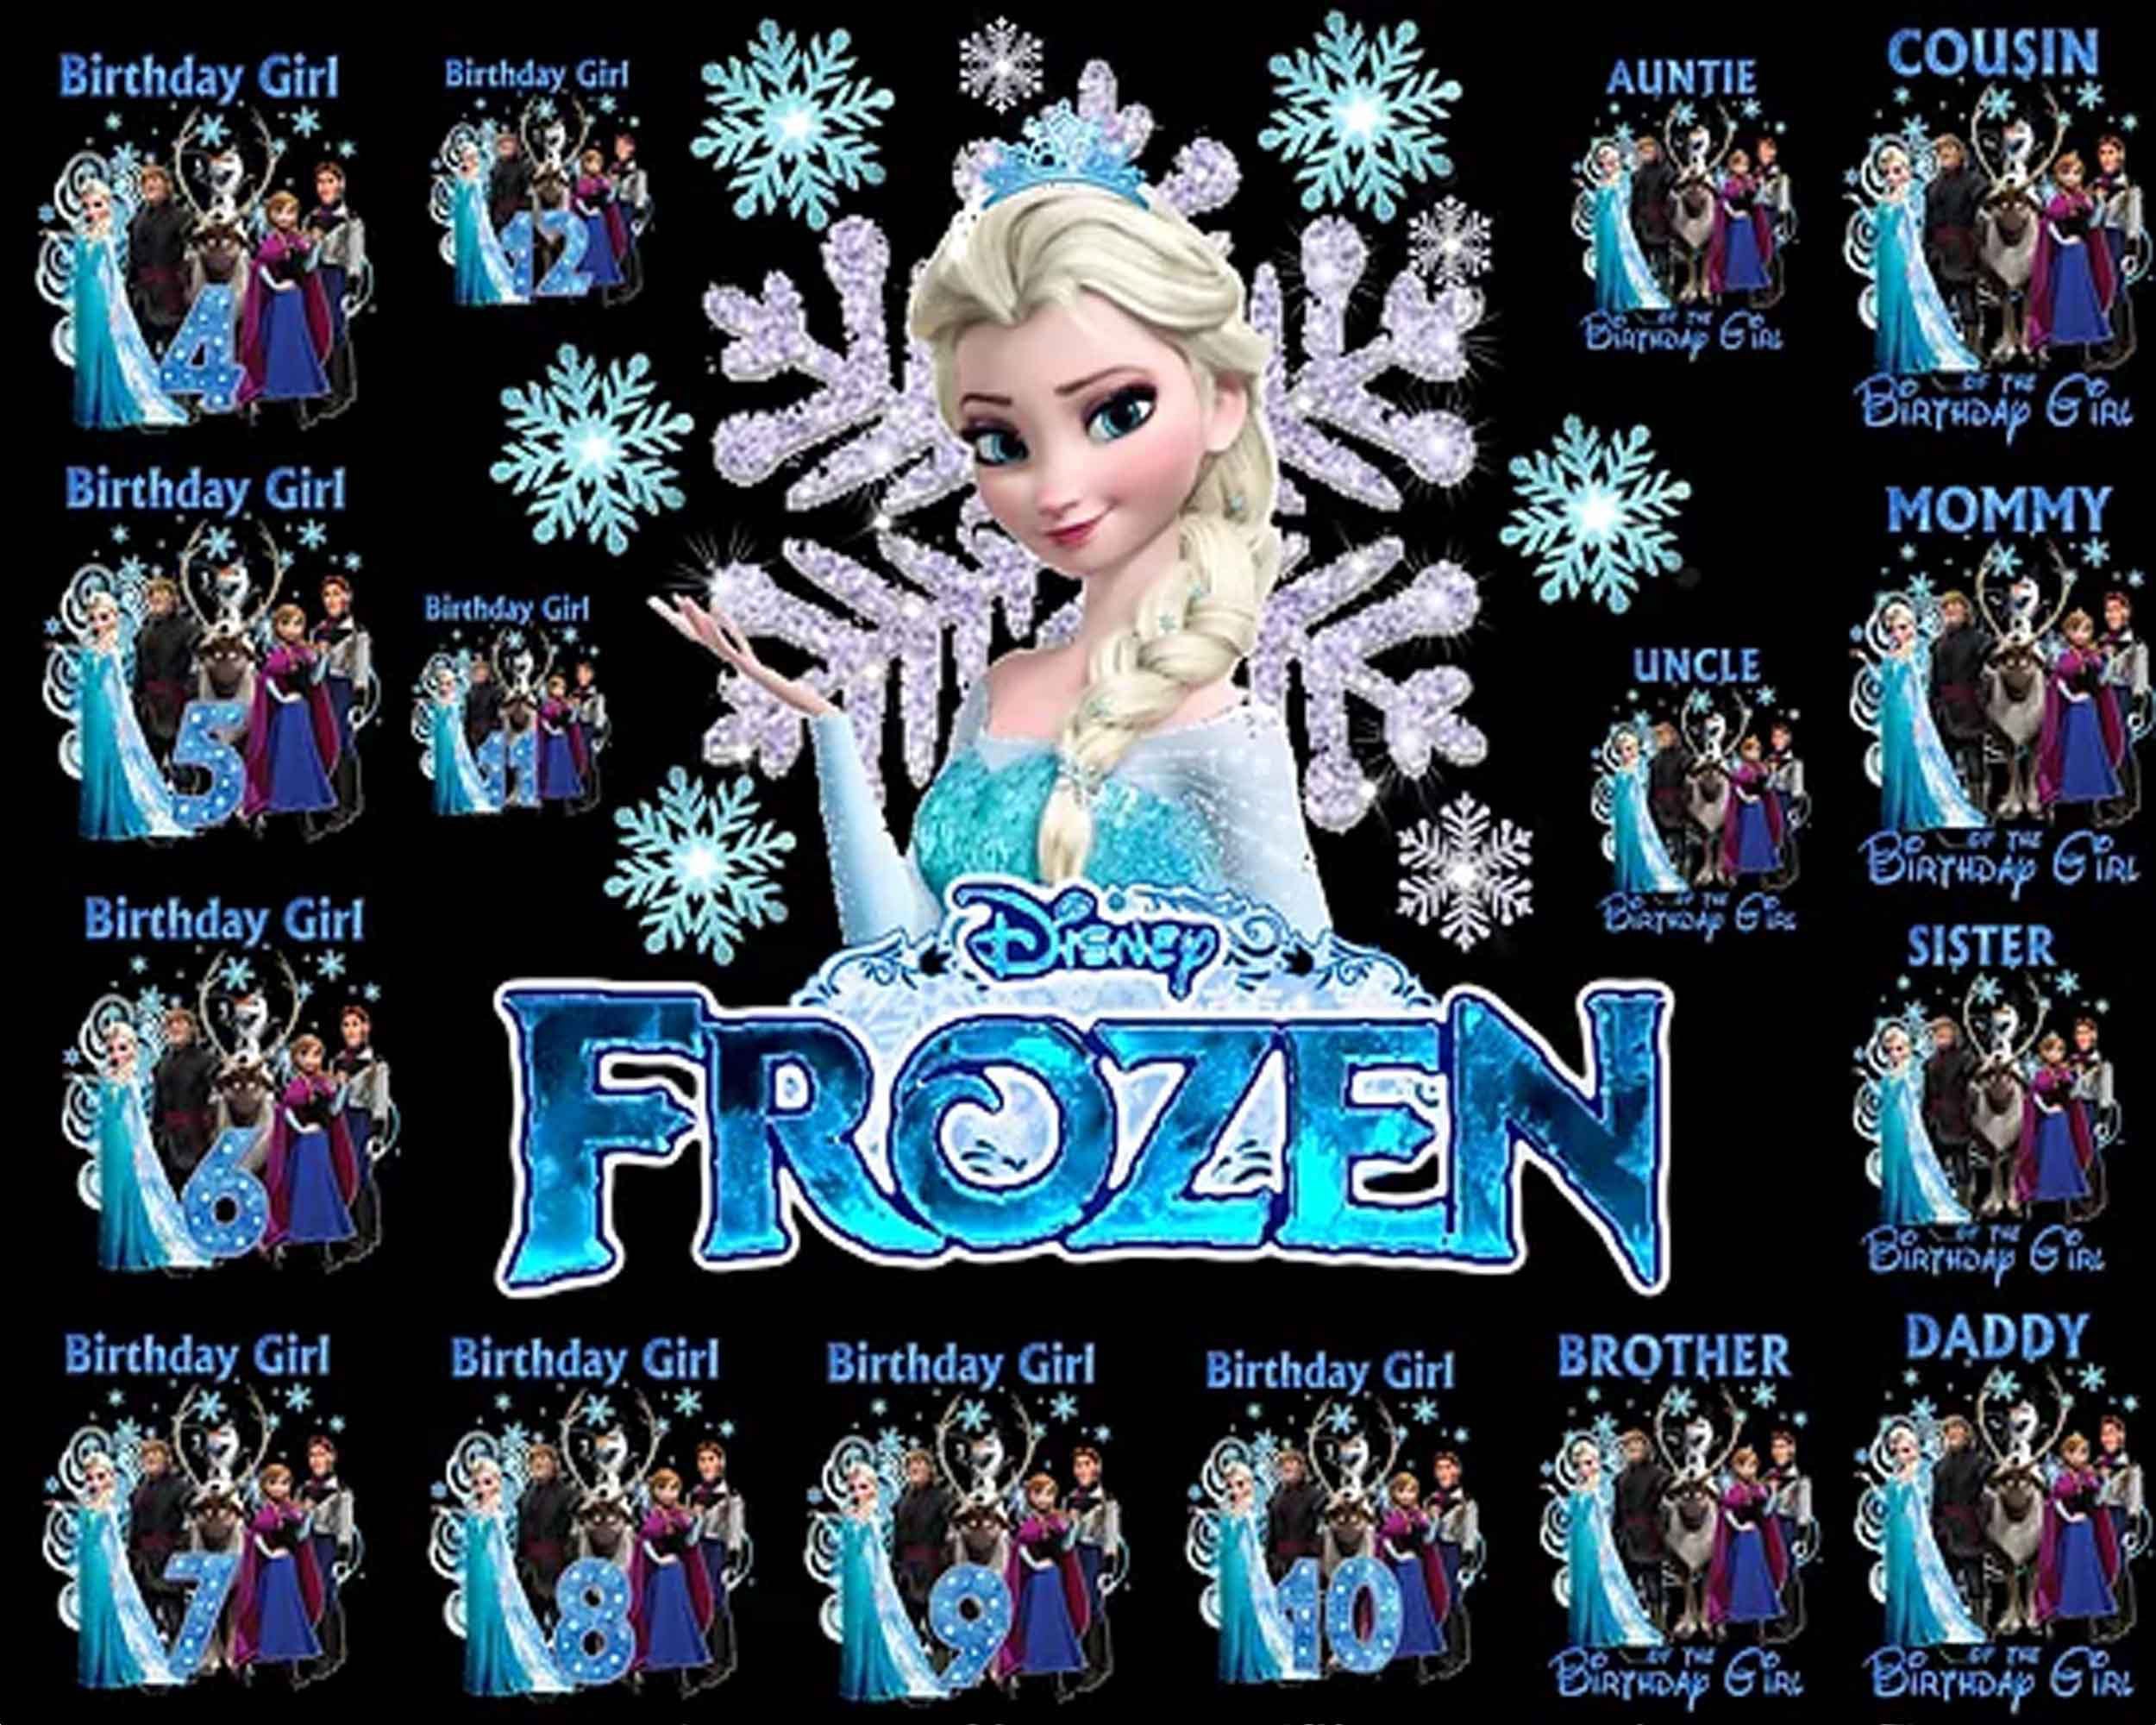 Elsa png clip art, Frozen clipart, Disney Princess PNG download, Queen Elsa digital image download